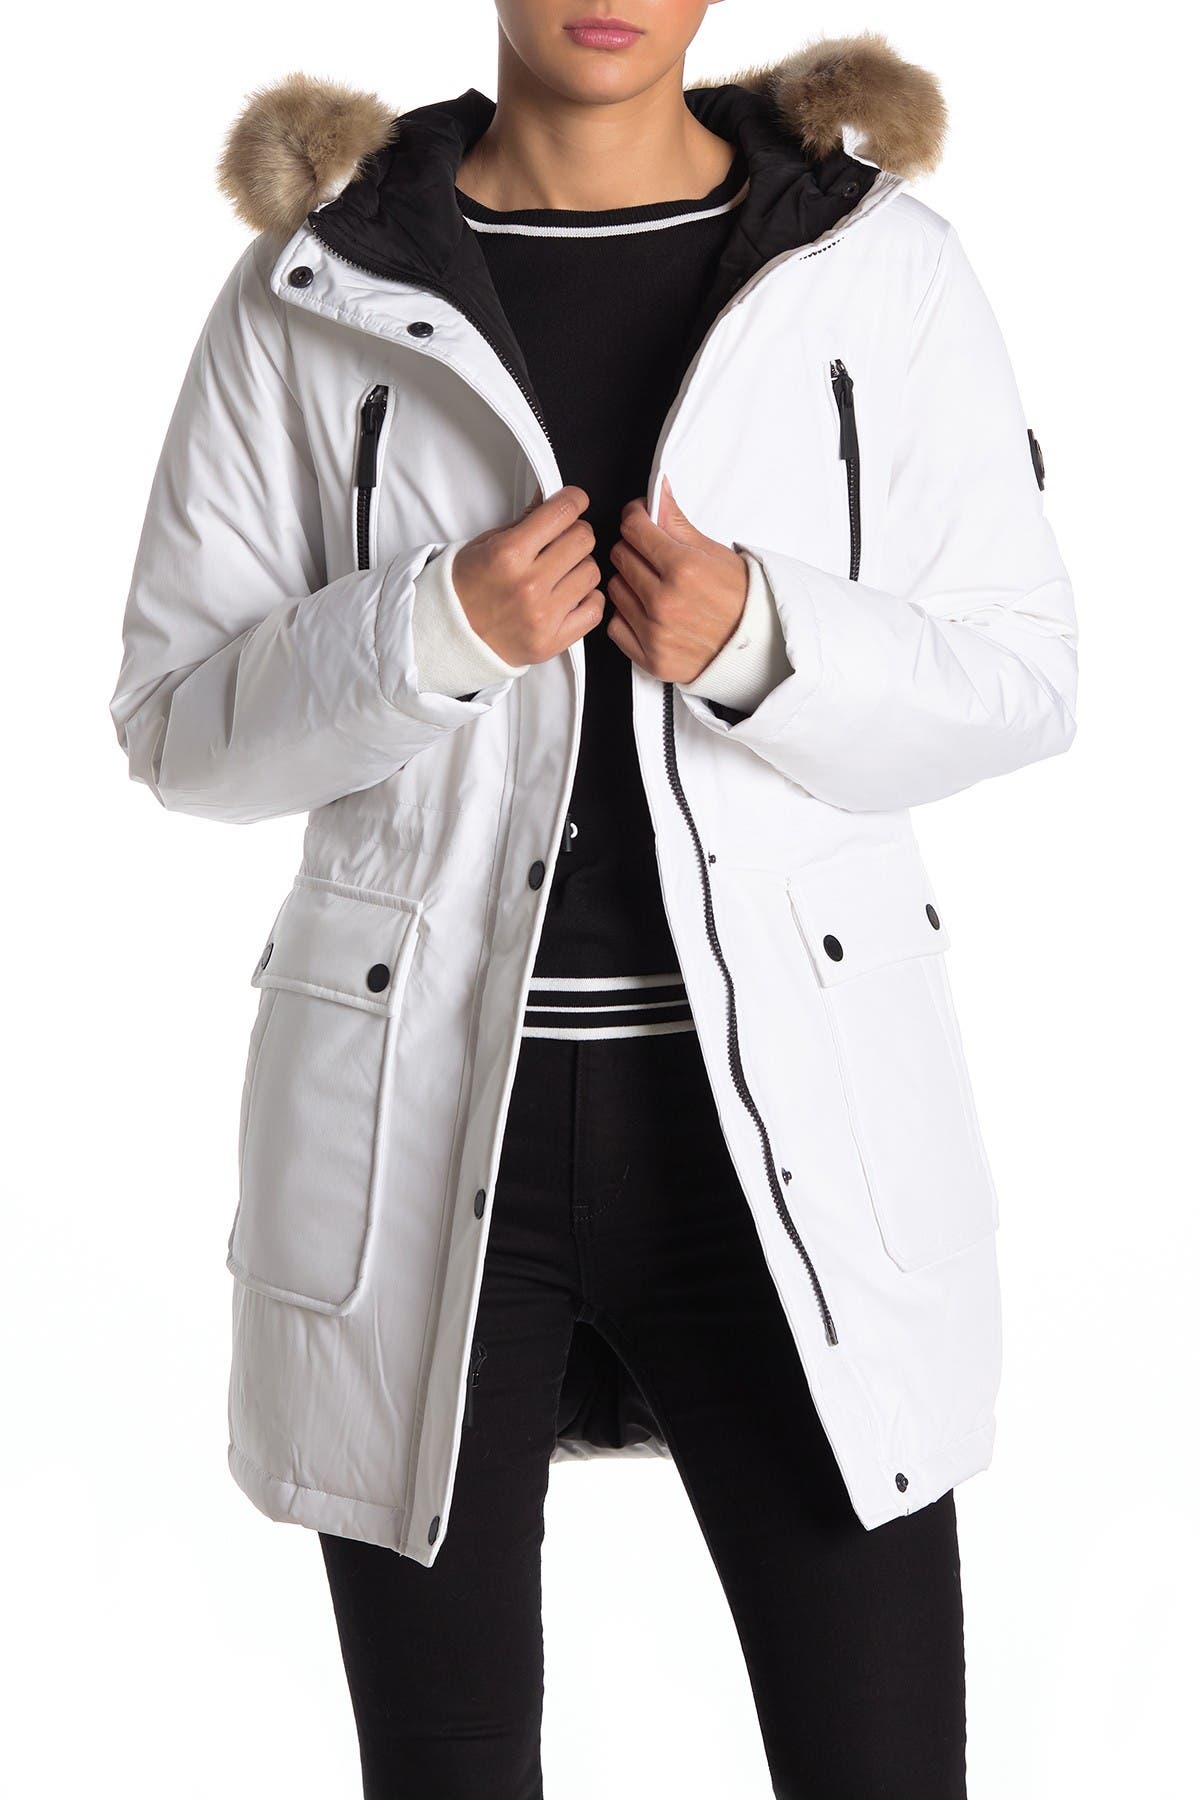 michael kors white winter coat